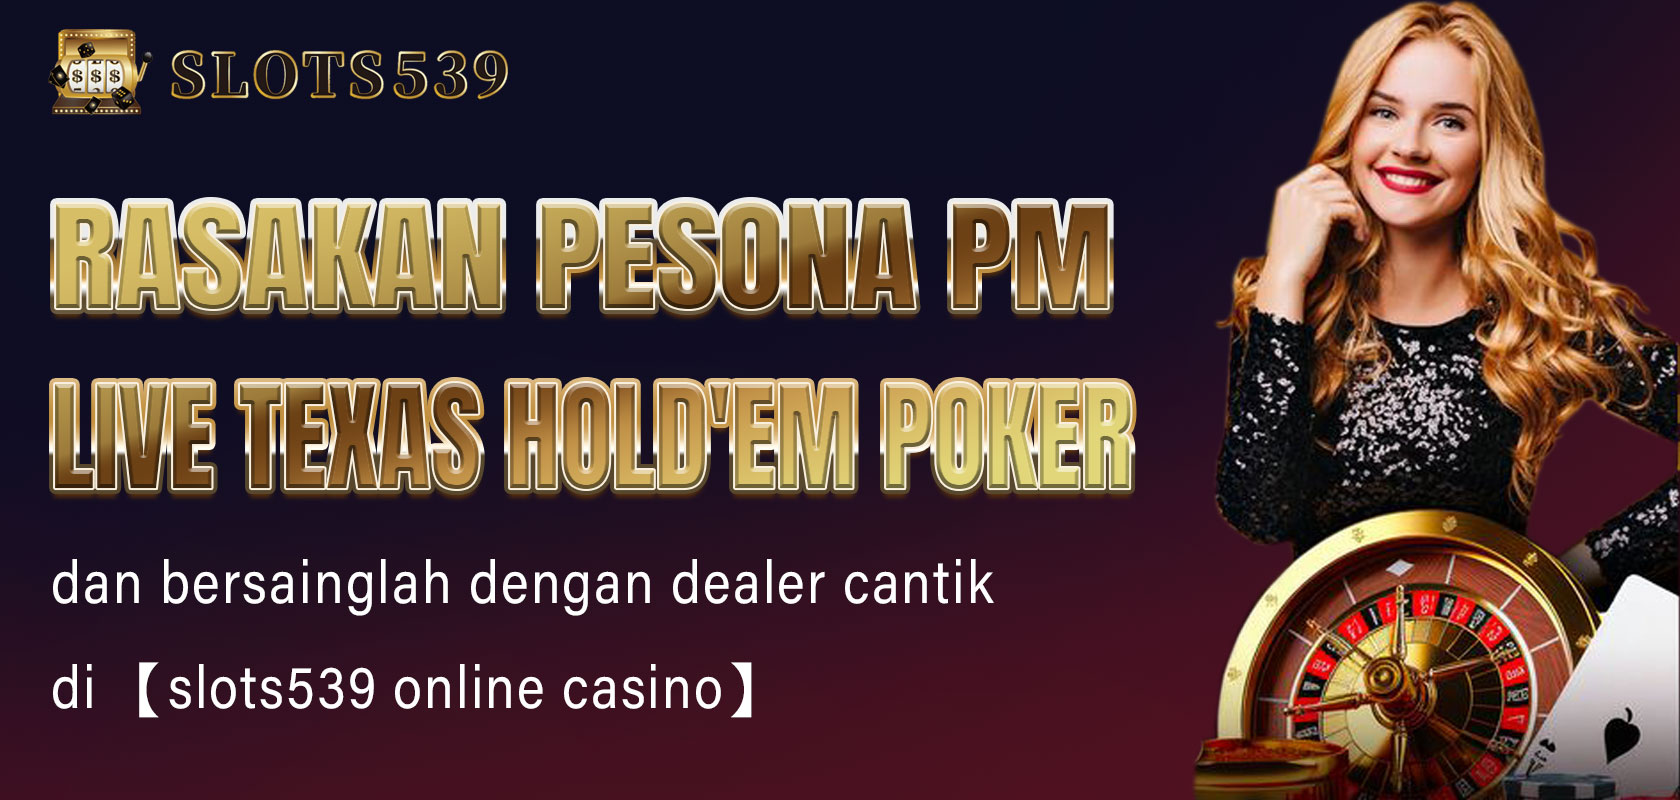 Rasakan pesona PM live Texas Hold'em poker dan bersainglah dengan dealer cantik di 【slots539 online casino】